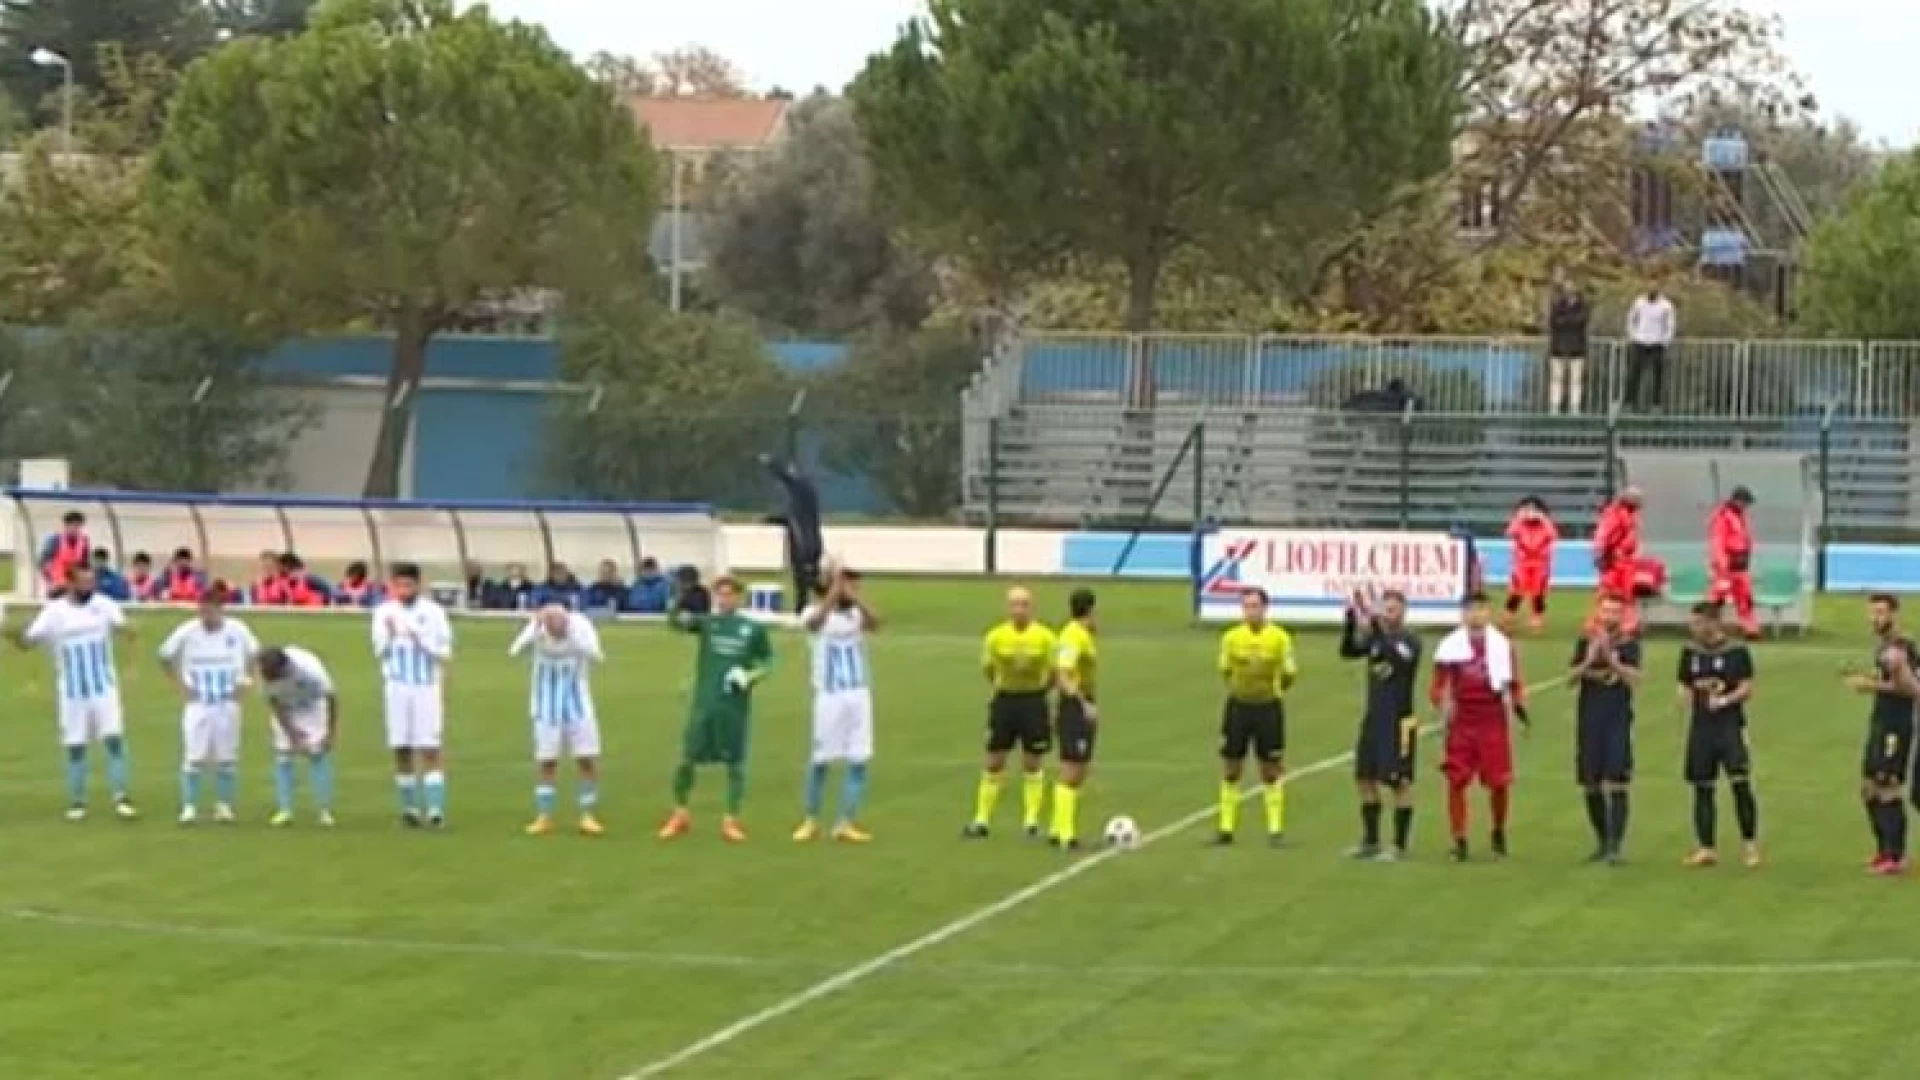 Serie D, girone F: IL Vastogirardi crolla a Pineto. Pesante sconfitta per gli altomolisani. Il match finisce 5-0.